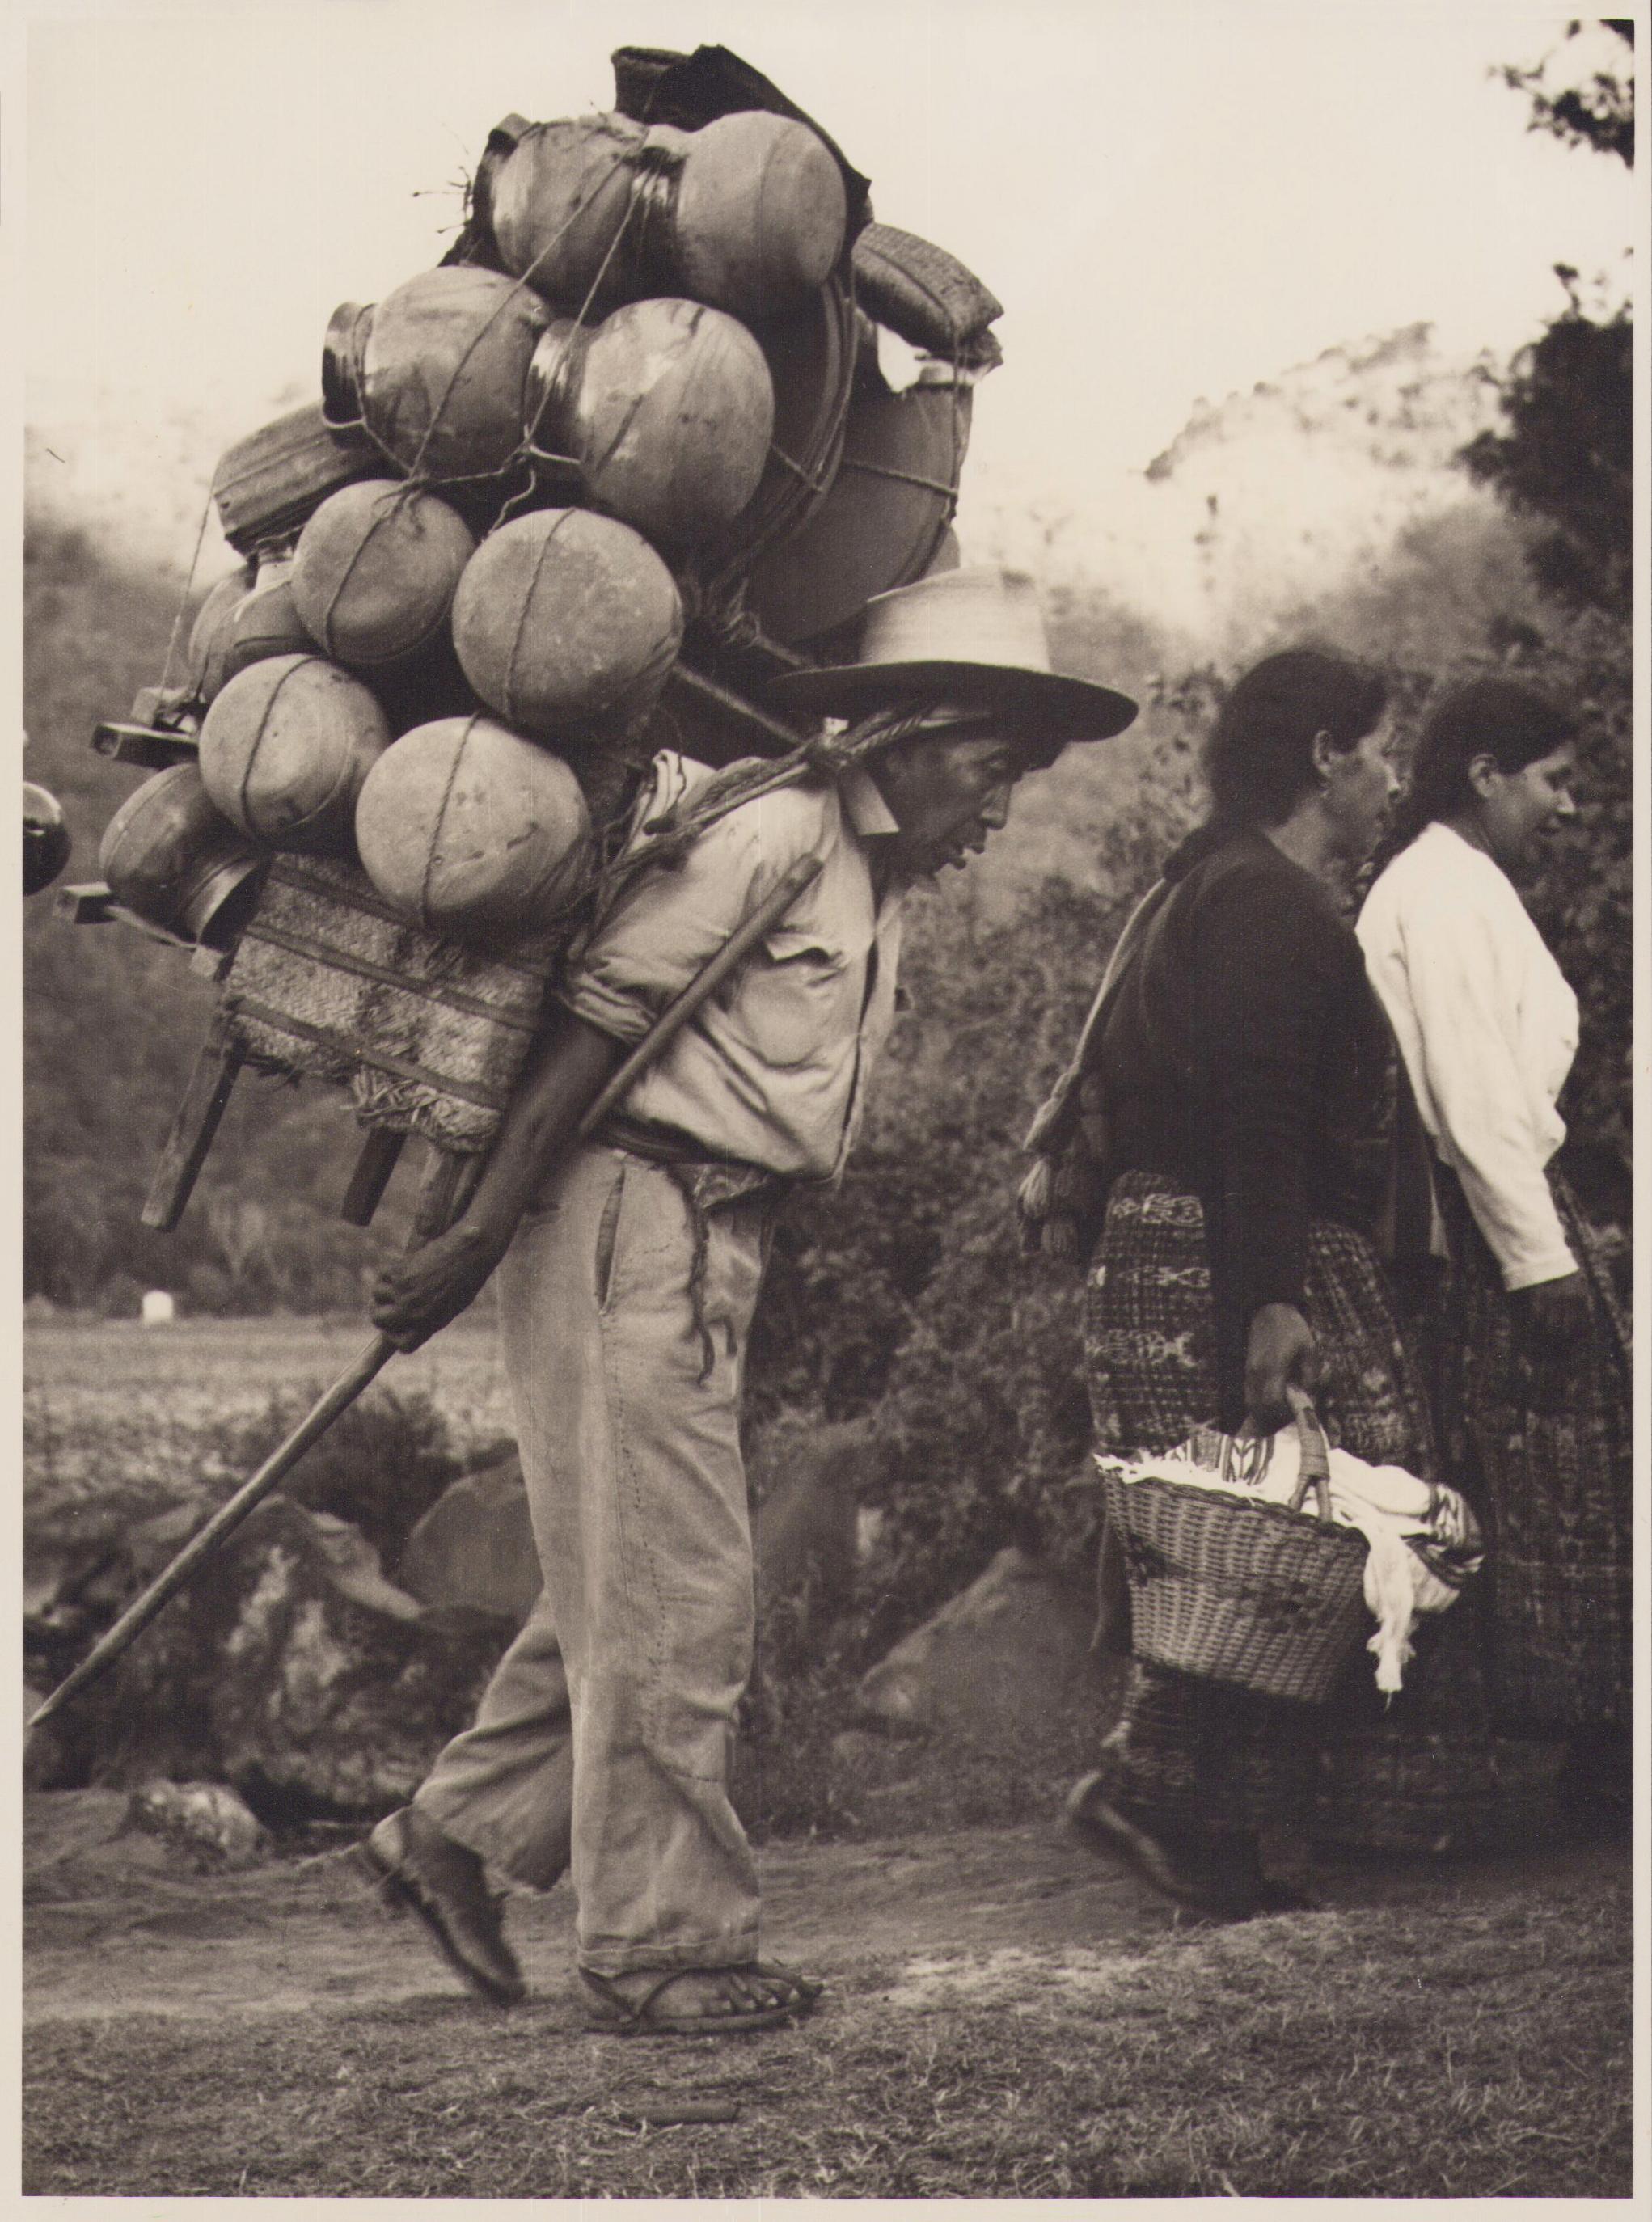 Hanna Seidel Black and White Photograph – Guatemala, Mann, Schwarz-Weiß-Fotografie, ca. 1960er Jahre, 25,3 x 24,2 cm